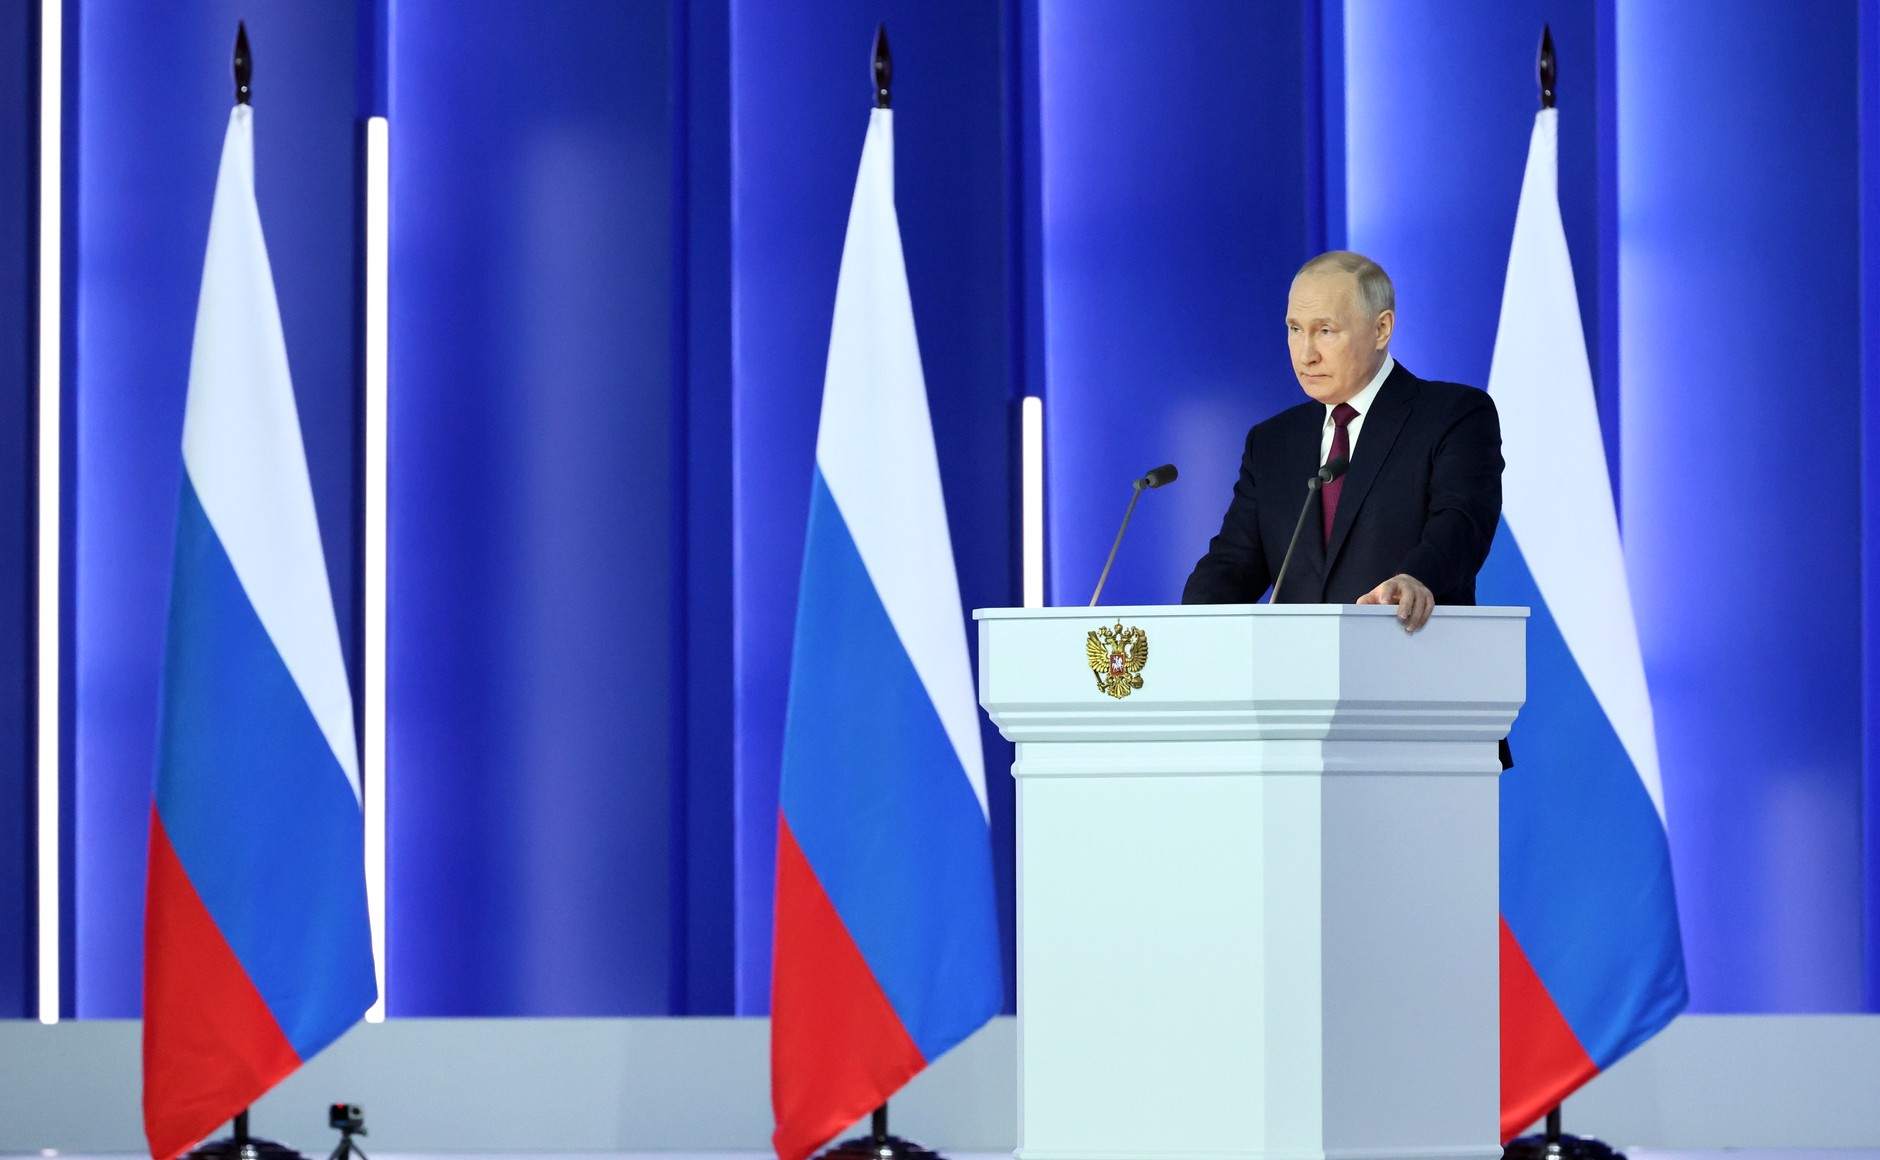 Владимир Путин: Будем расширять перспективные внешнеэкономические связи и выстраивать новые логистические коридоры